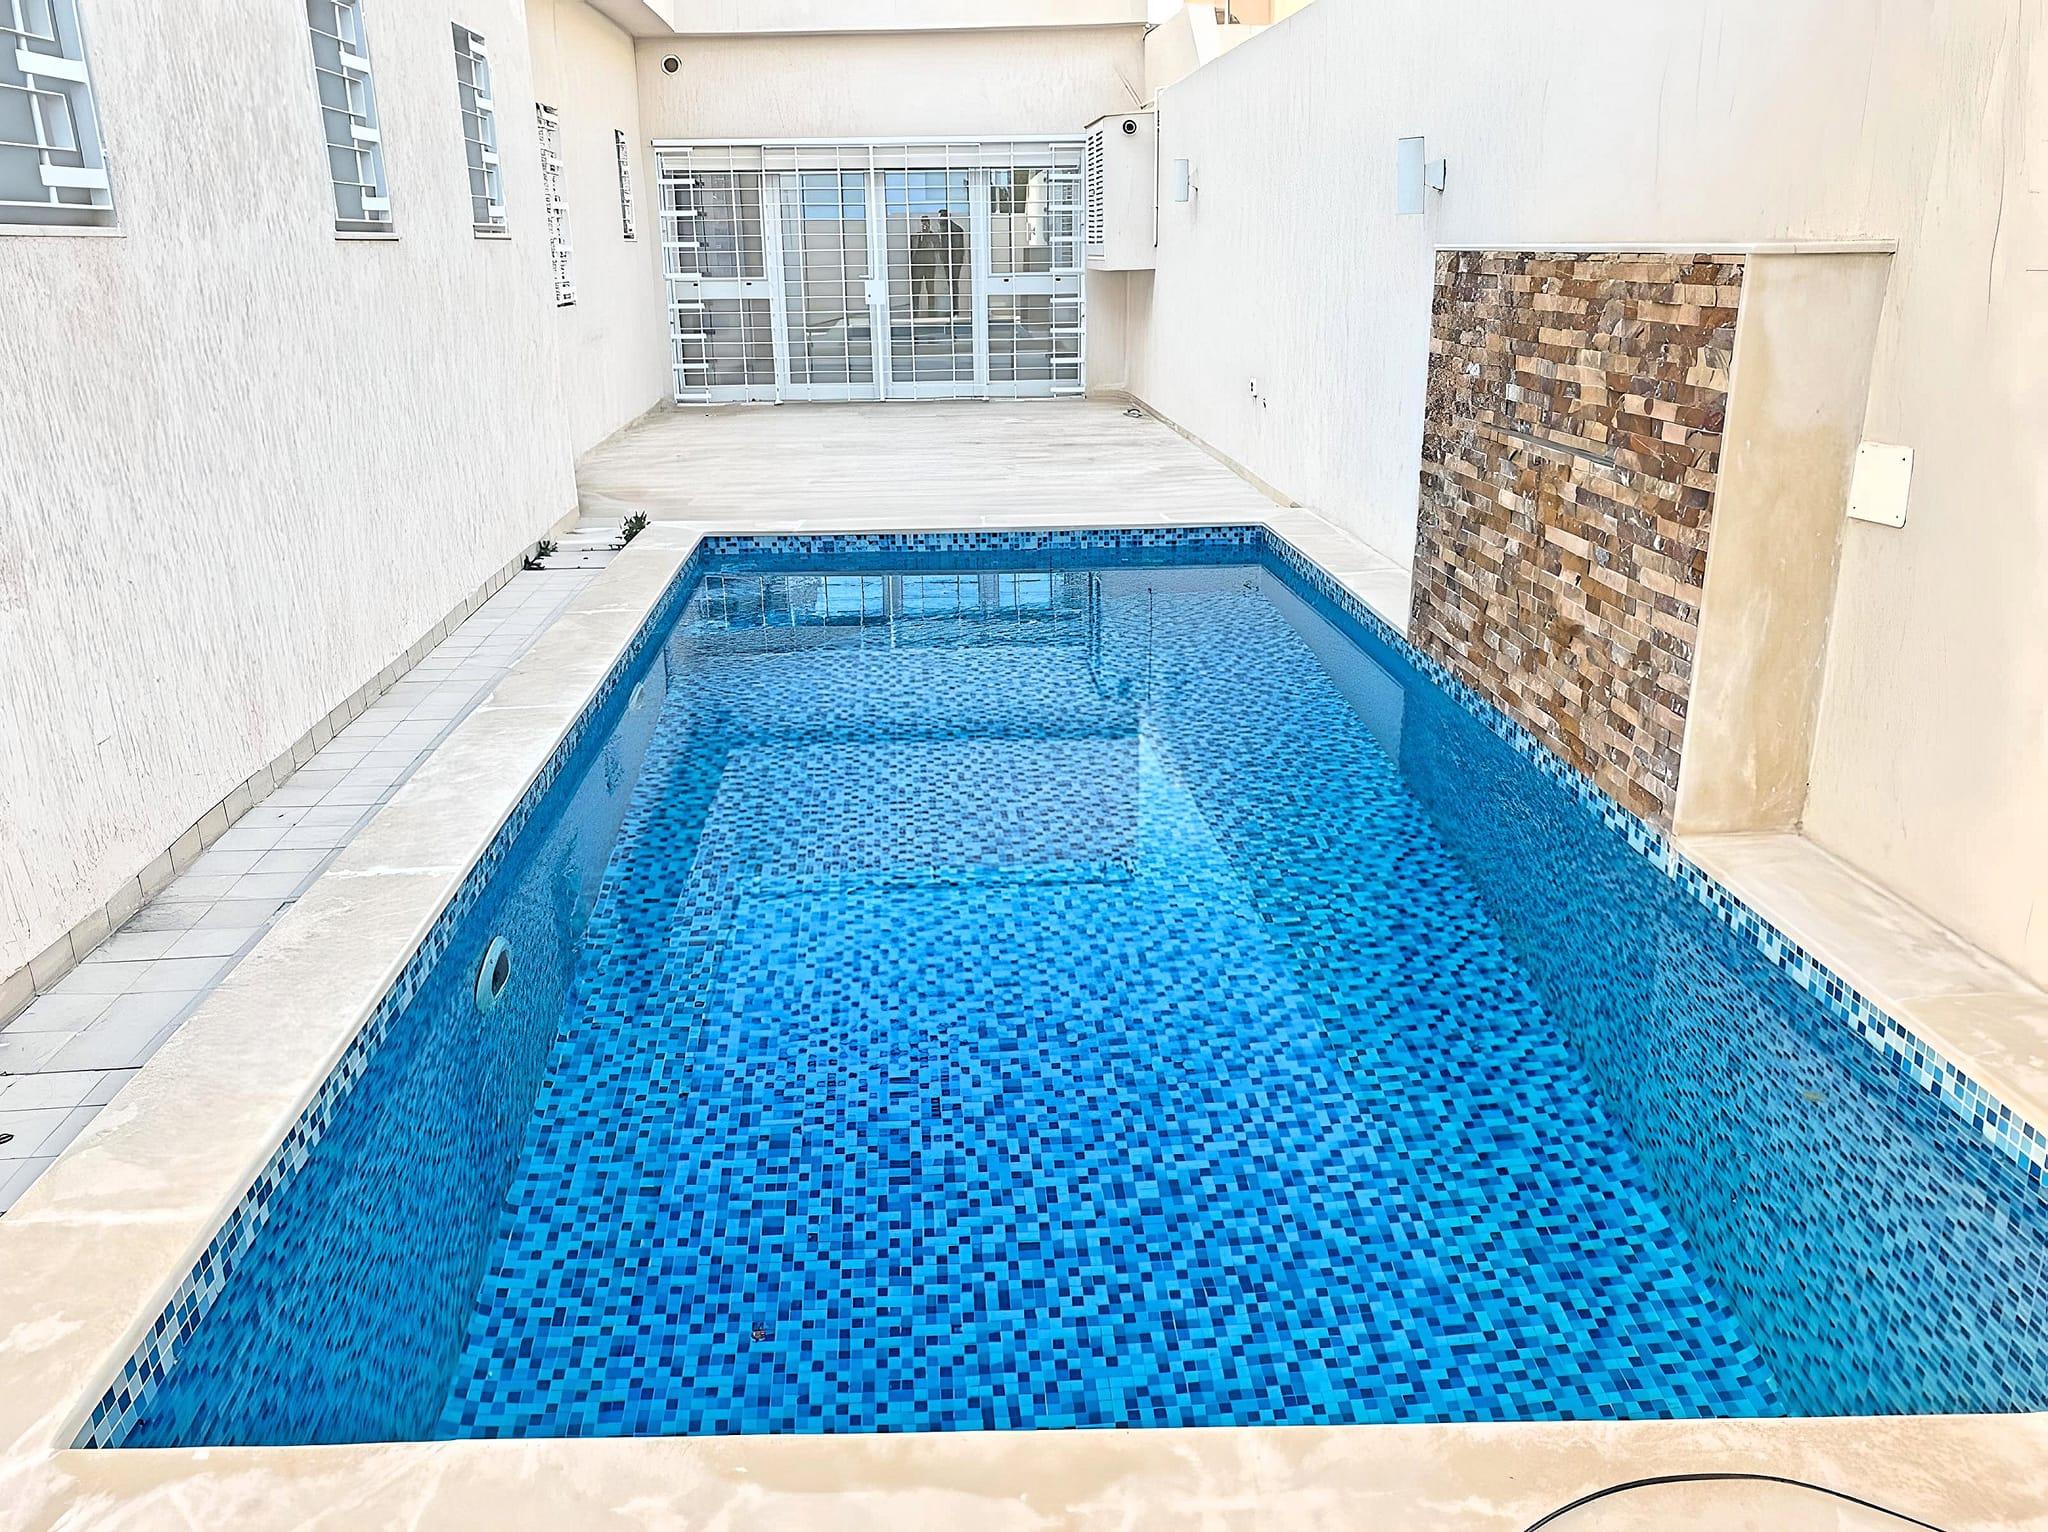 Une magnifique villa S+4 avec jardin et piscine, ainsi qu'un studio indépendant à l'étage, située à El Ghazela